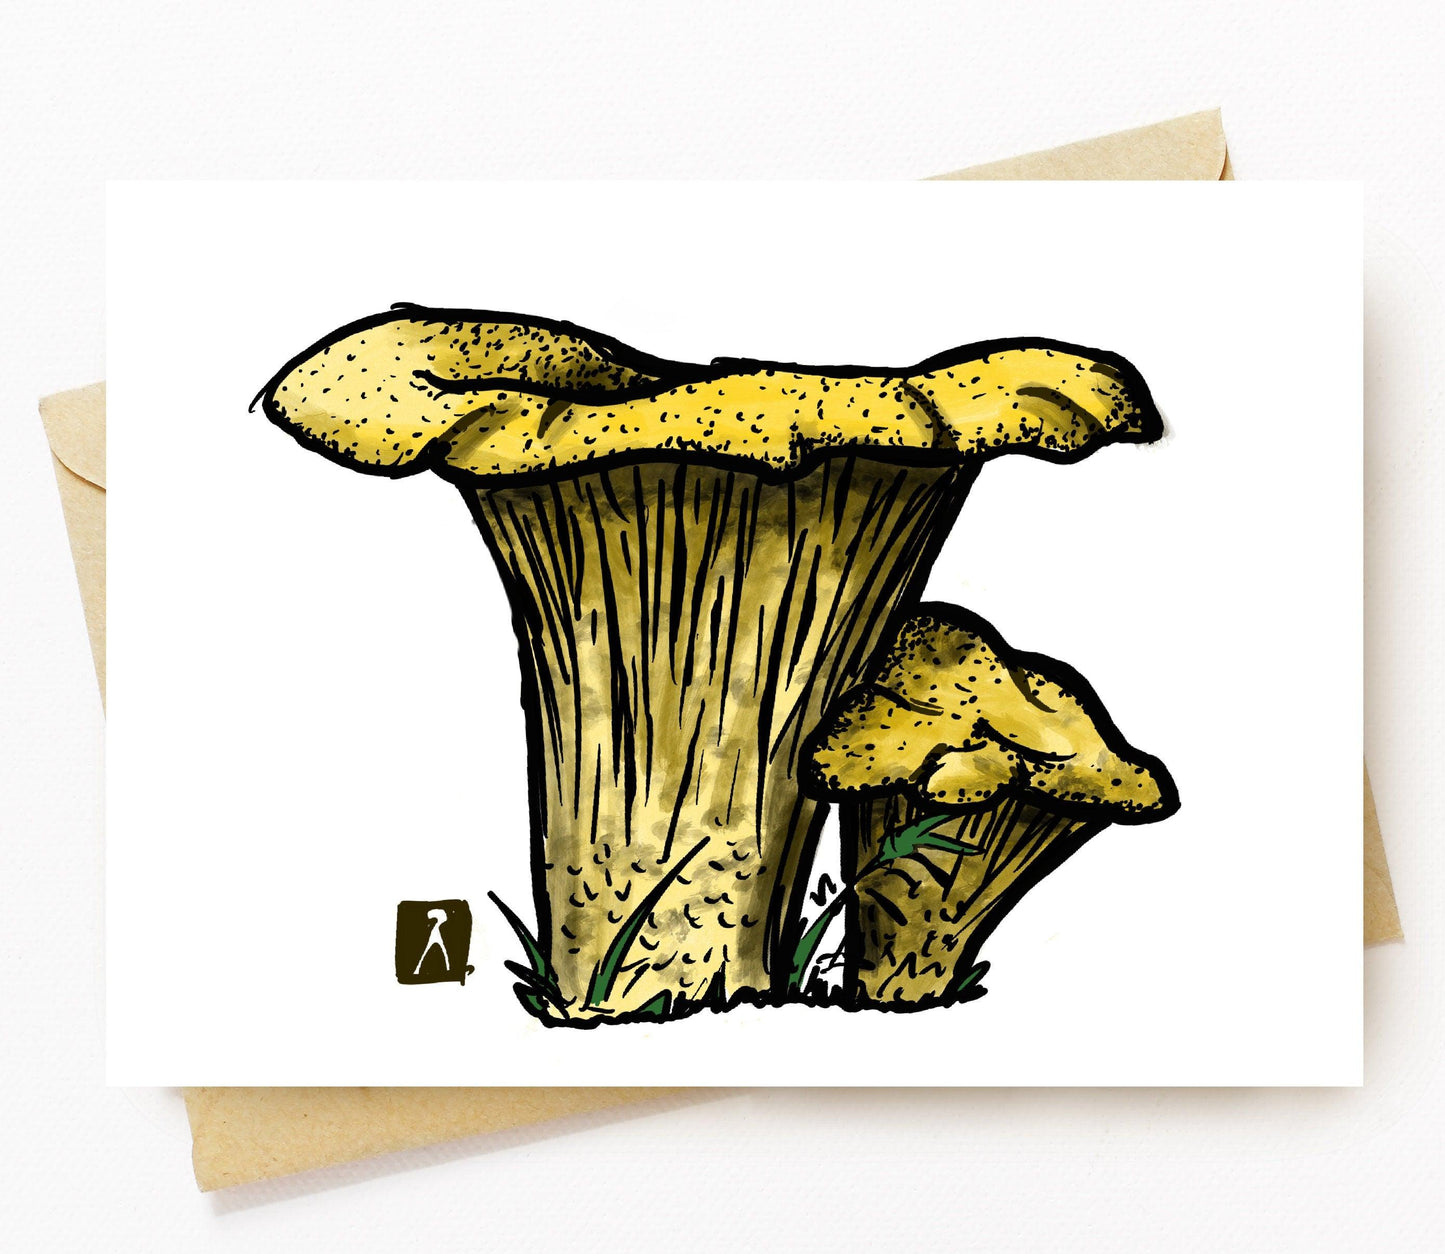 BellavanceInk: Greeting Card With a Pen & Ink Drawing/Watercolor of Chanterelles Mushrooms - BellavanceInk